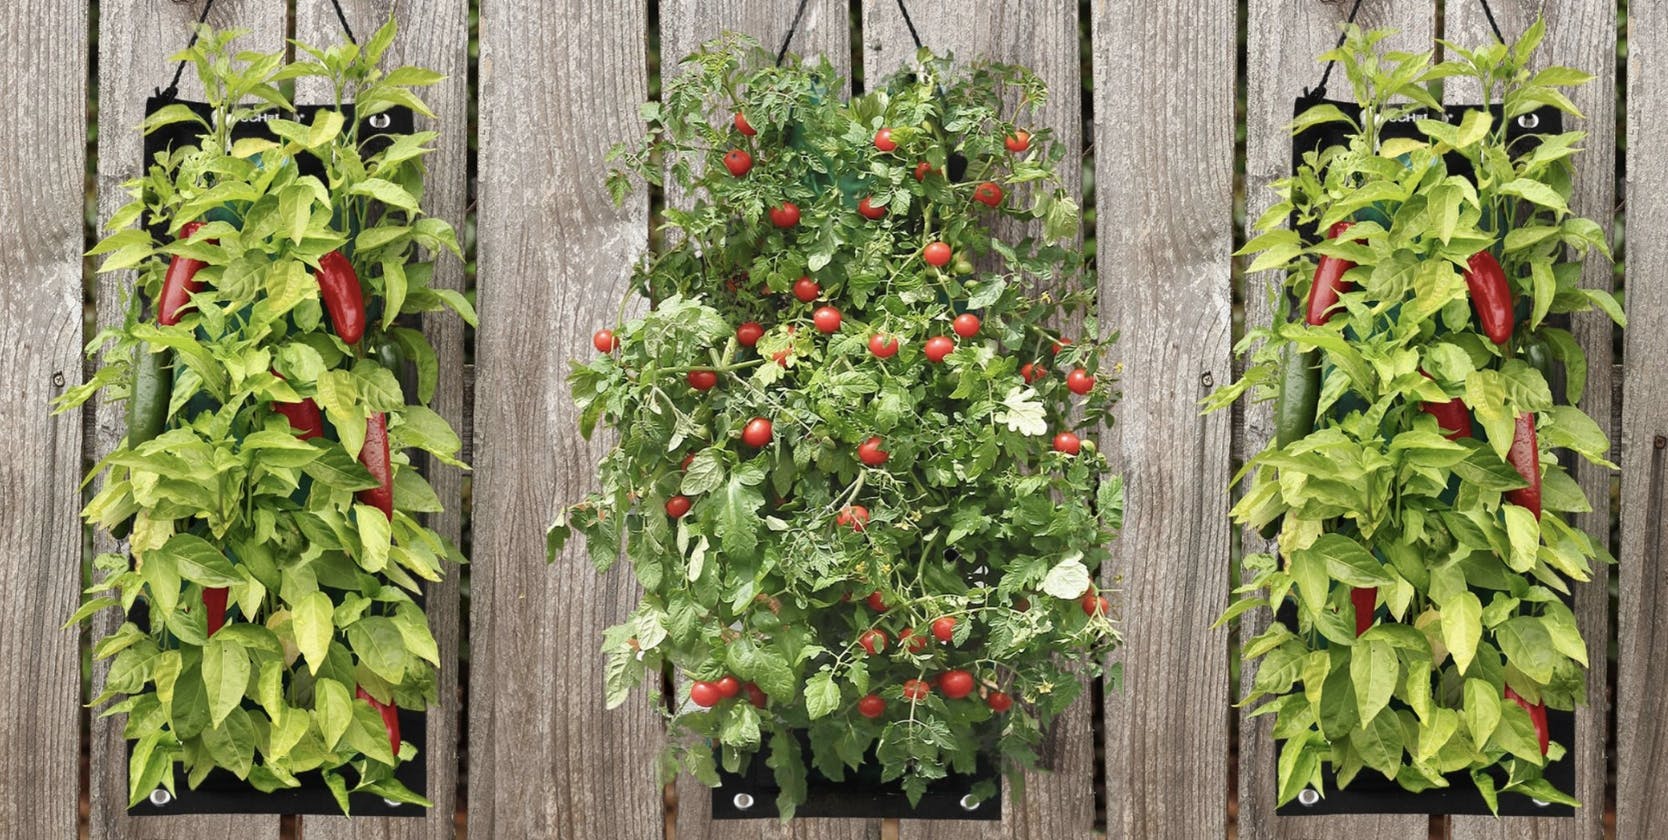 until gone Indoor:Outdoor Organic Hanging Fruit & Veggie Garden Kits featured image 2023